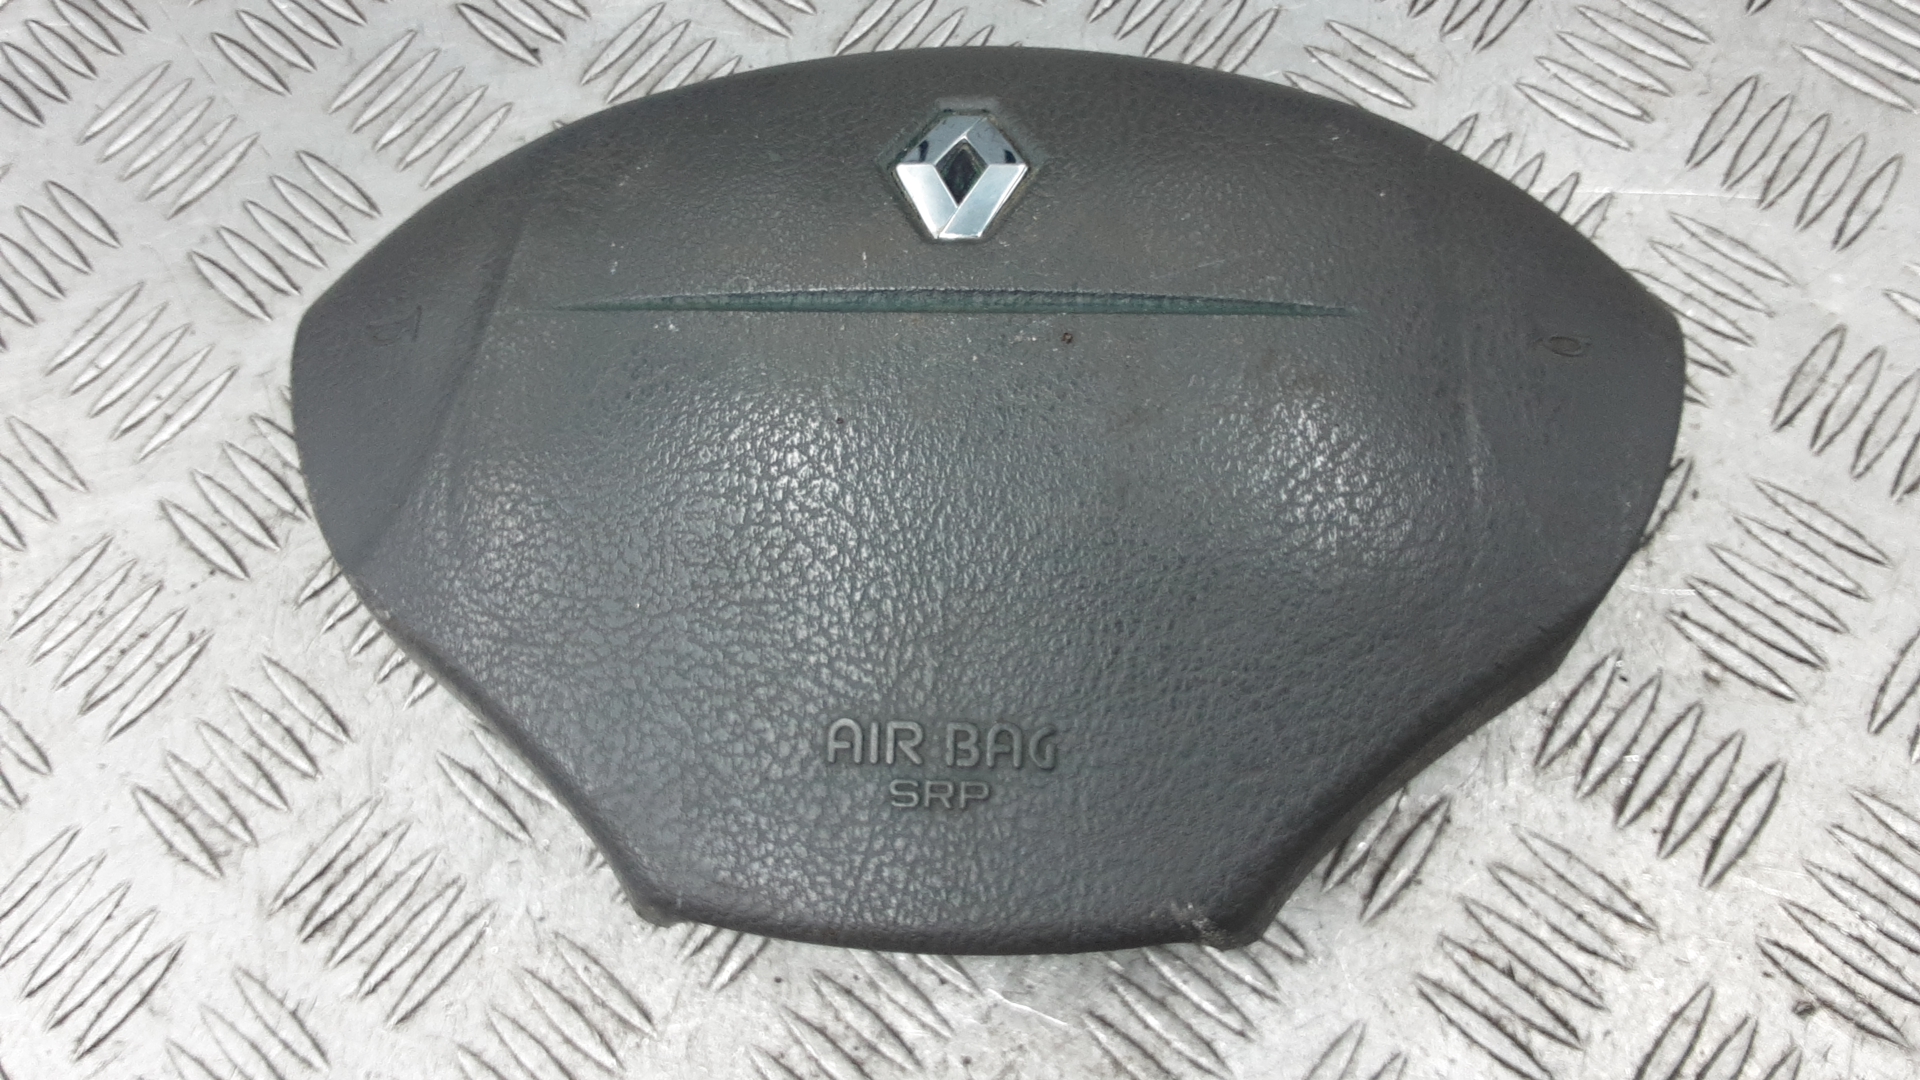 Подушка безопасности (Airbag) водителя - Renault Scenic (1996-2002)